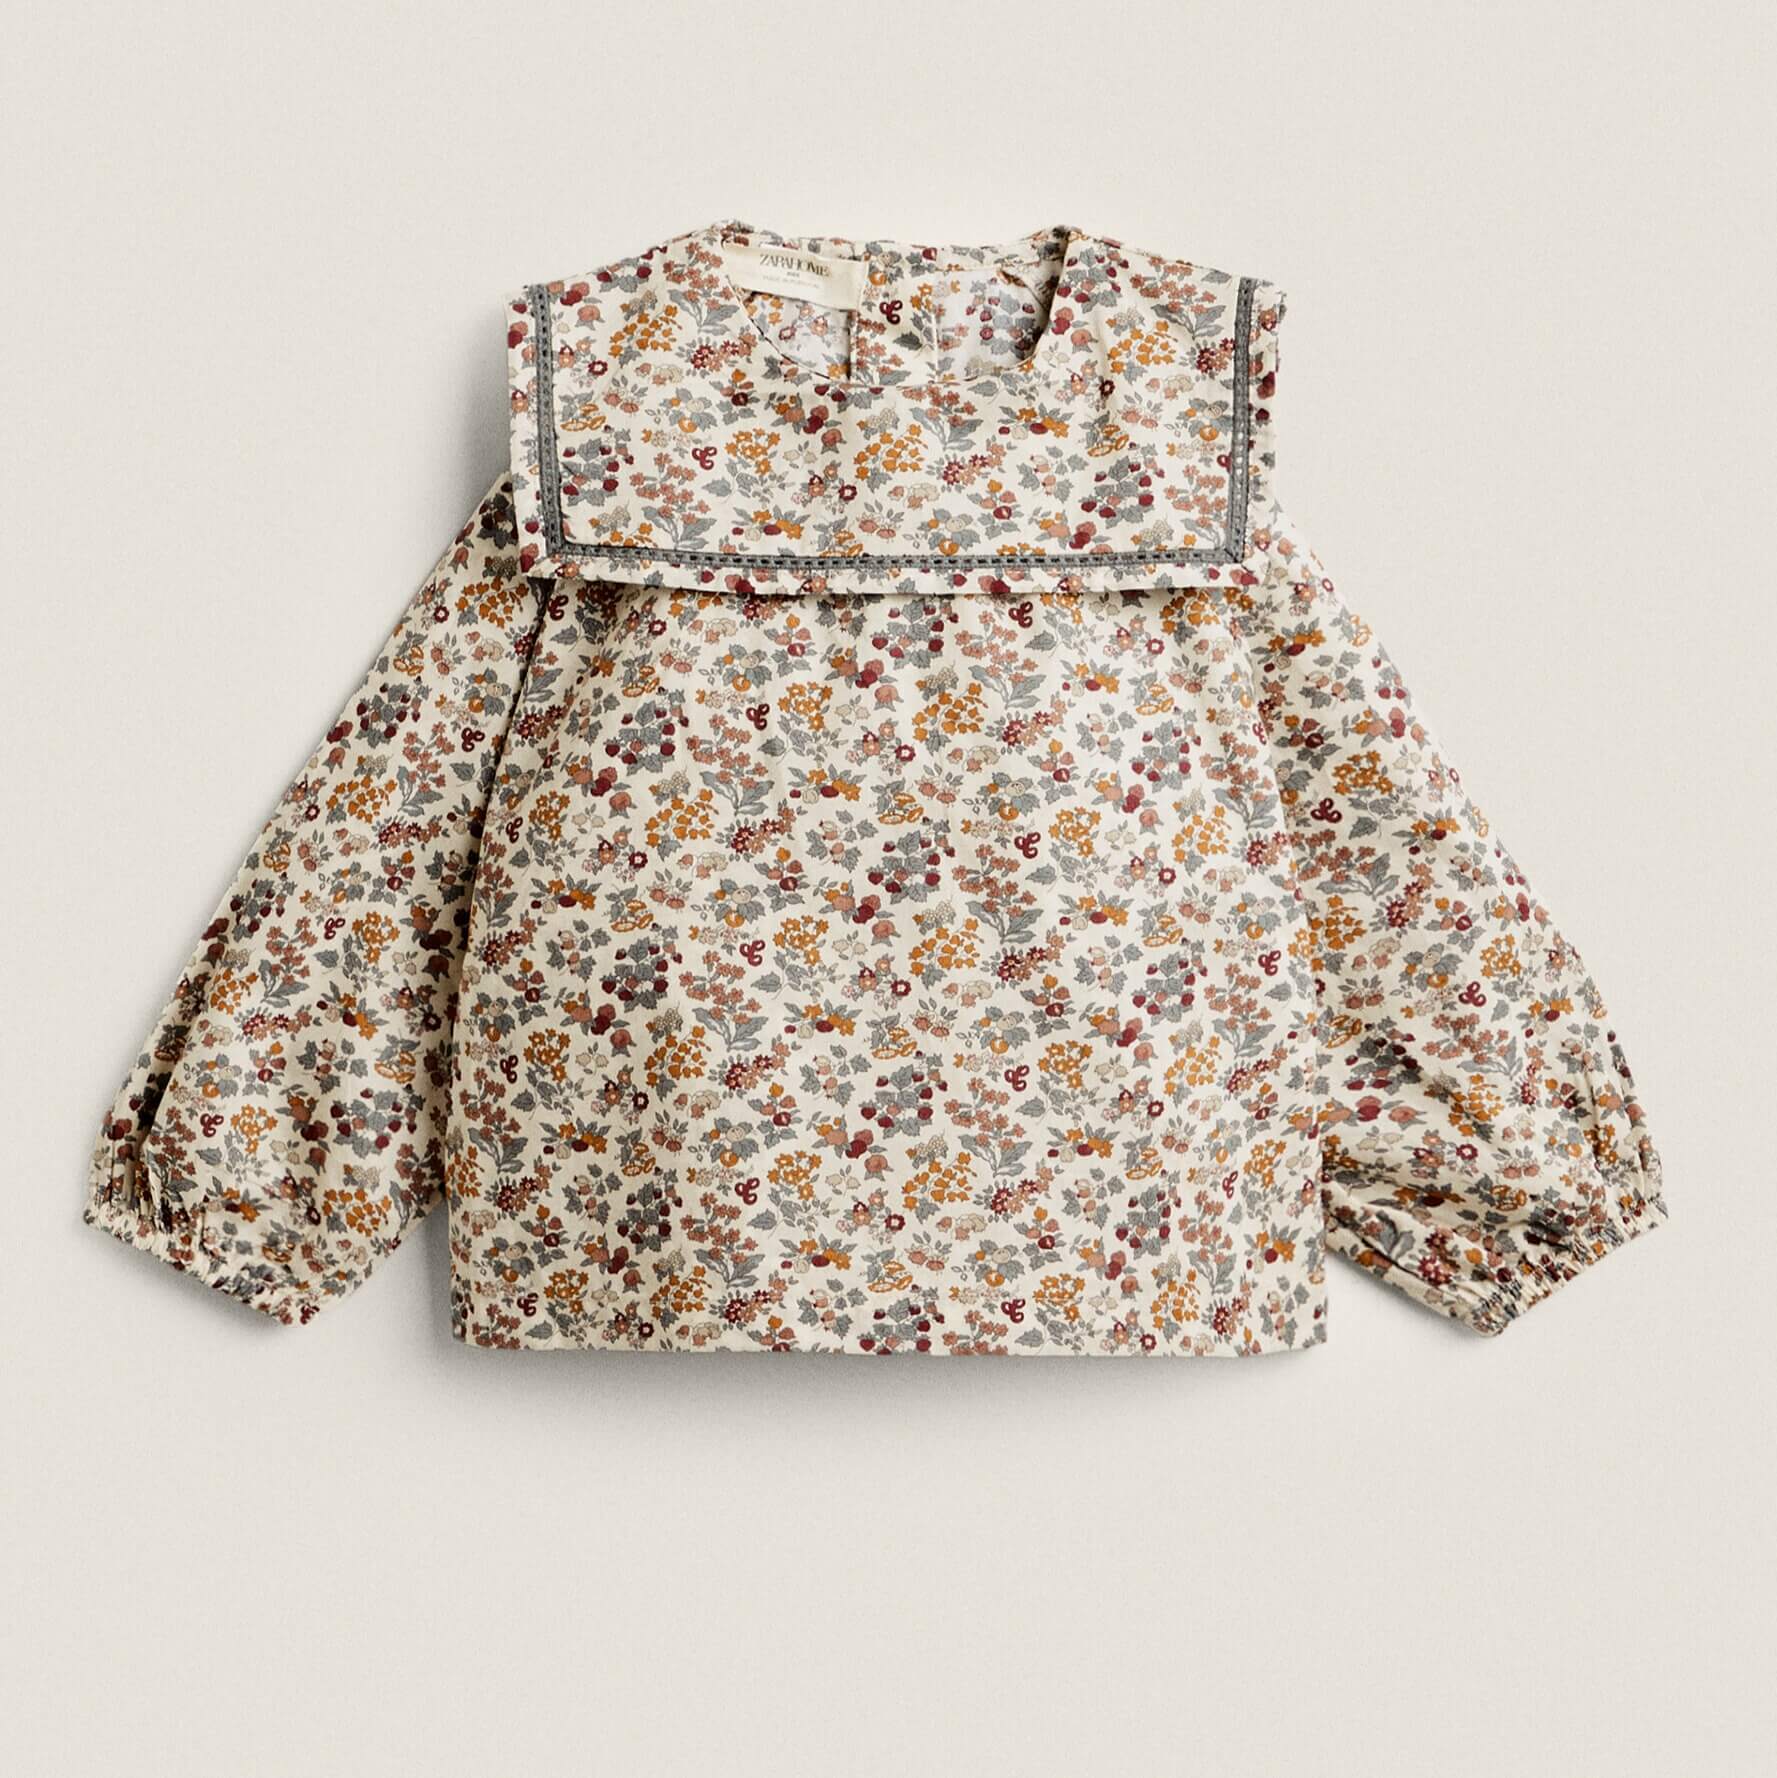 Рубашка Zara Home Floral Print Fabric Children’s увядшая блузка женская винтажная черная шифоновая рубашка с бисером повседневная модная рубашка с воротником питер пэн